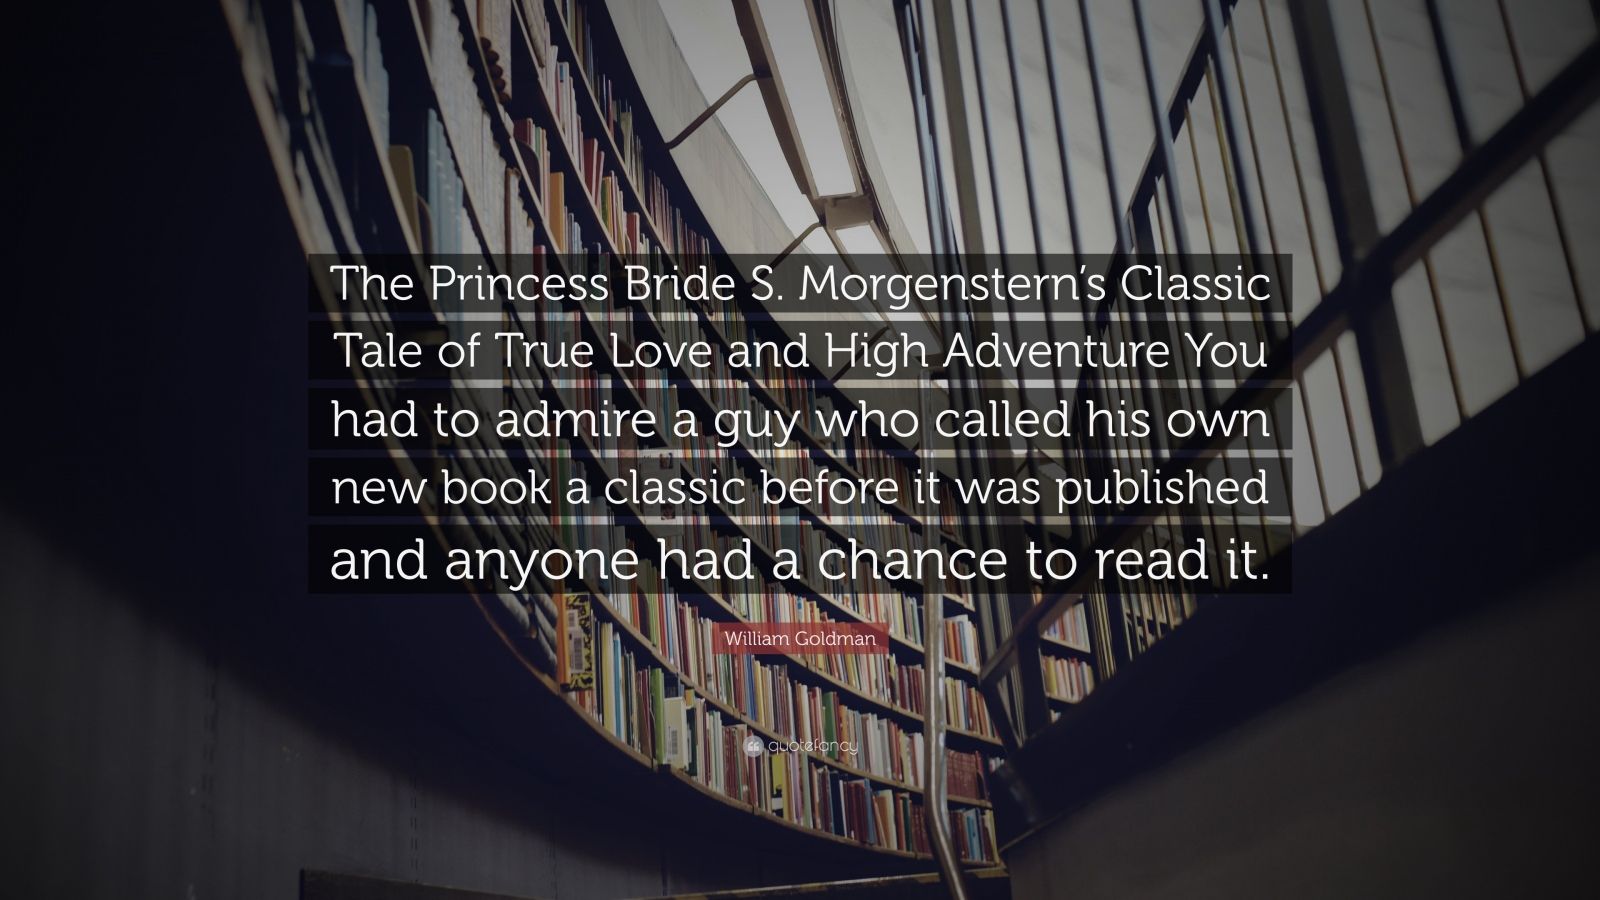 William Goldman Quote “The Princess Bride S Morgenstern s Classic Tale of True Love